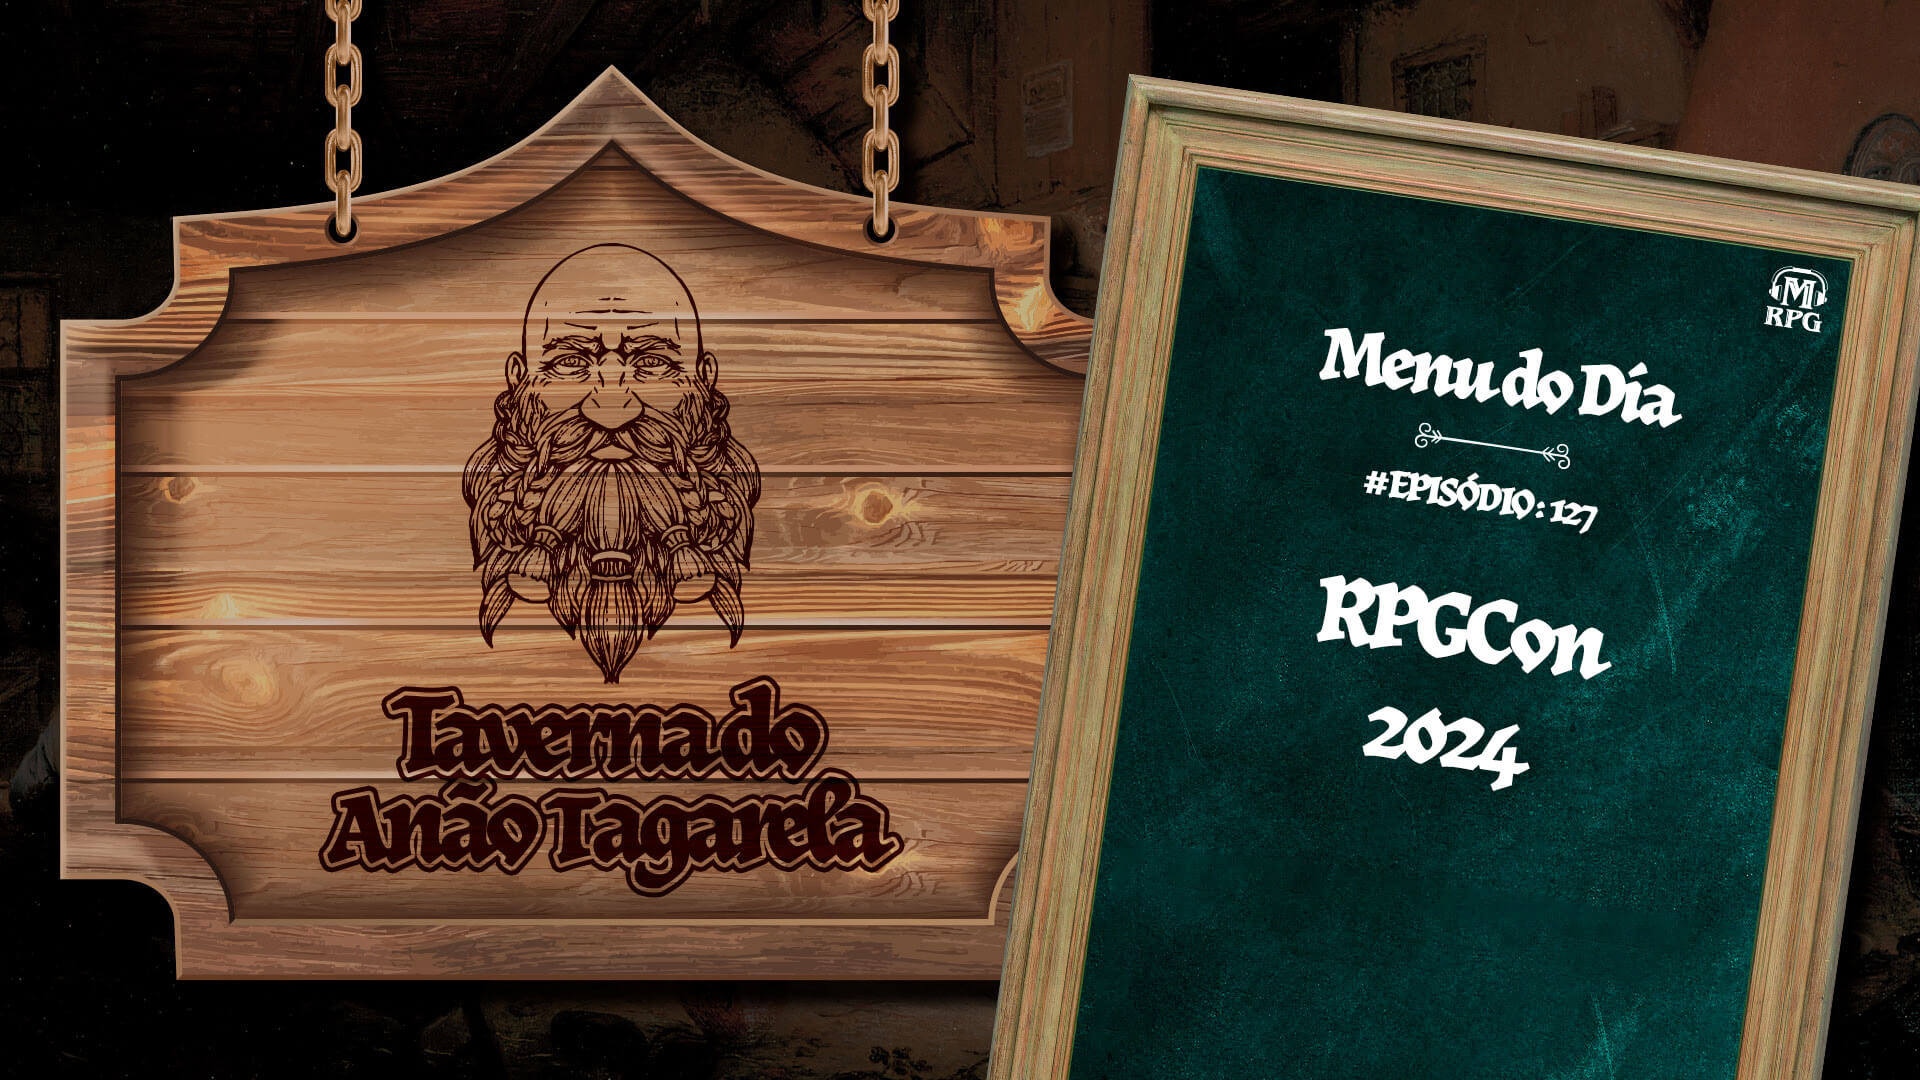 RPGCON 2024 – Taverna do Anão Tagarela #127